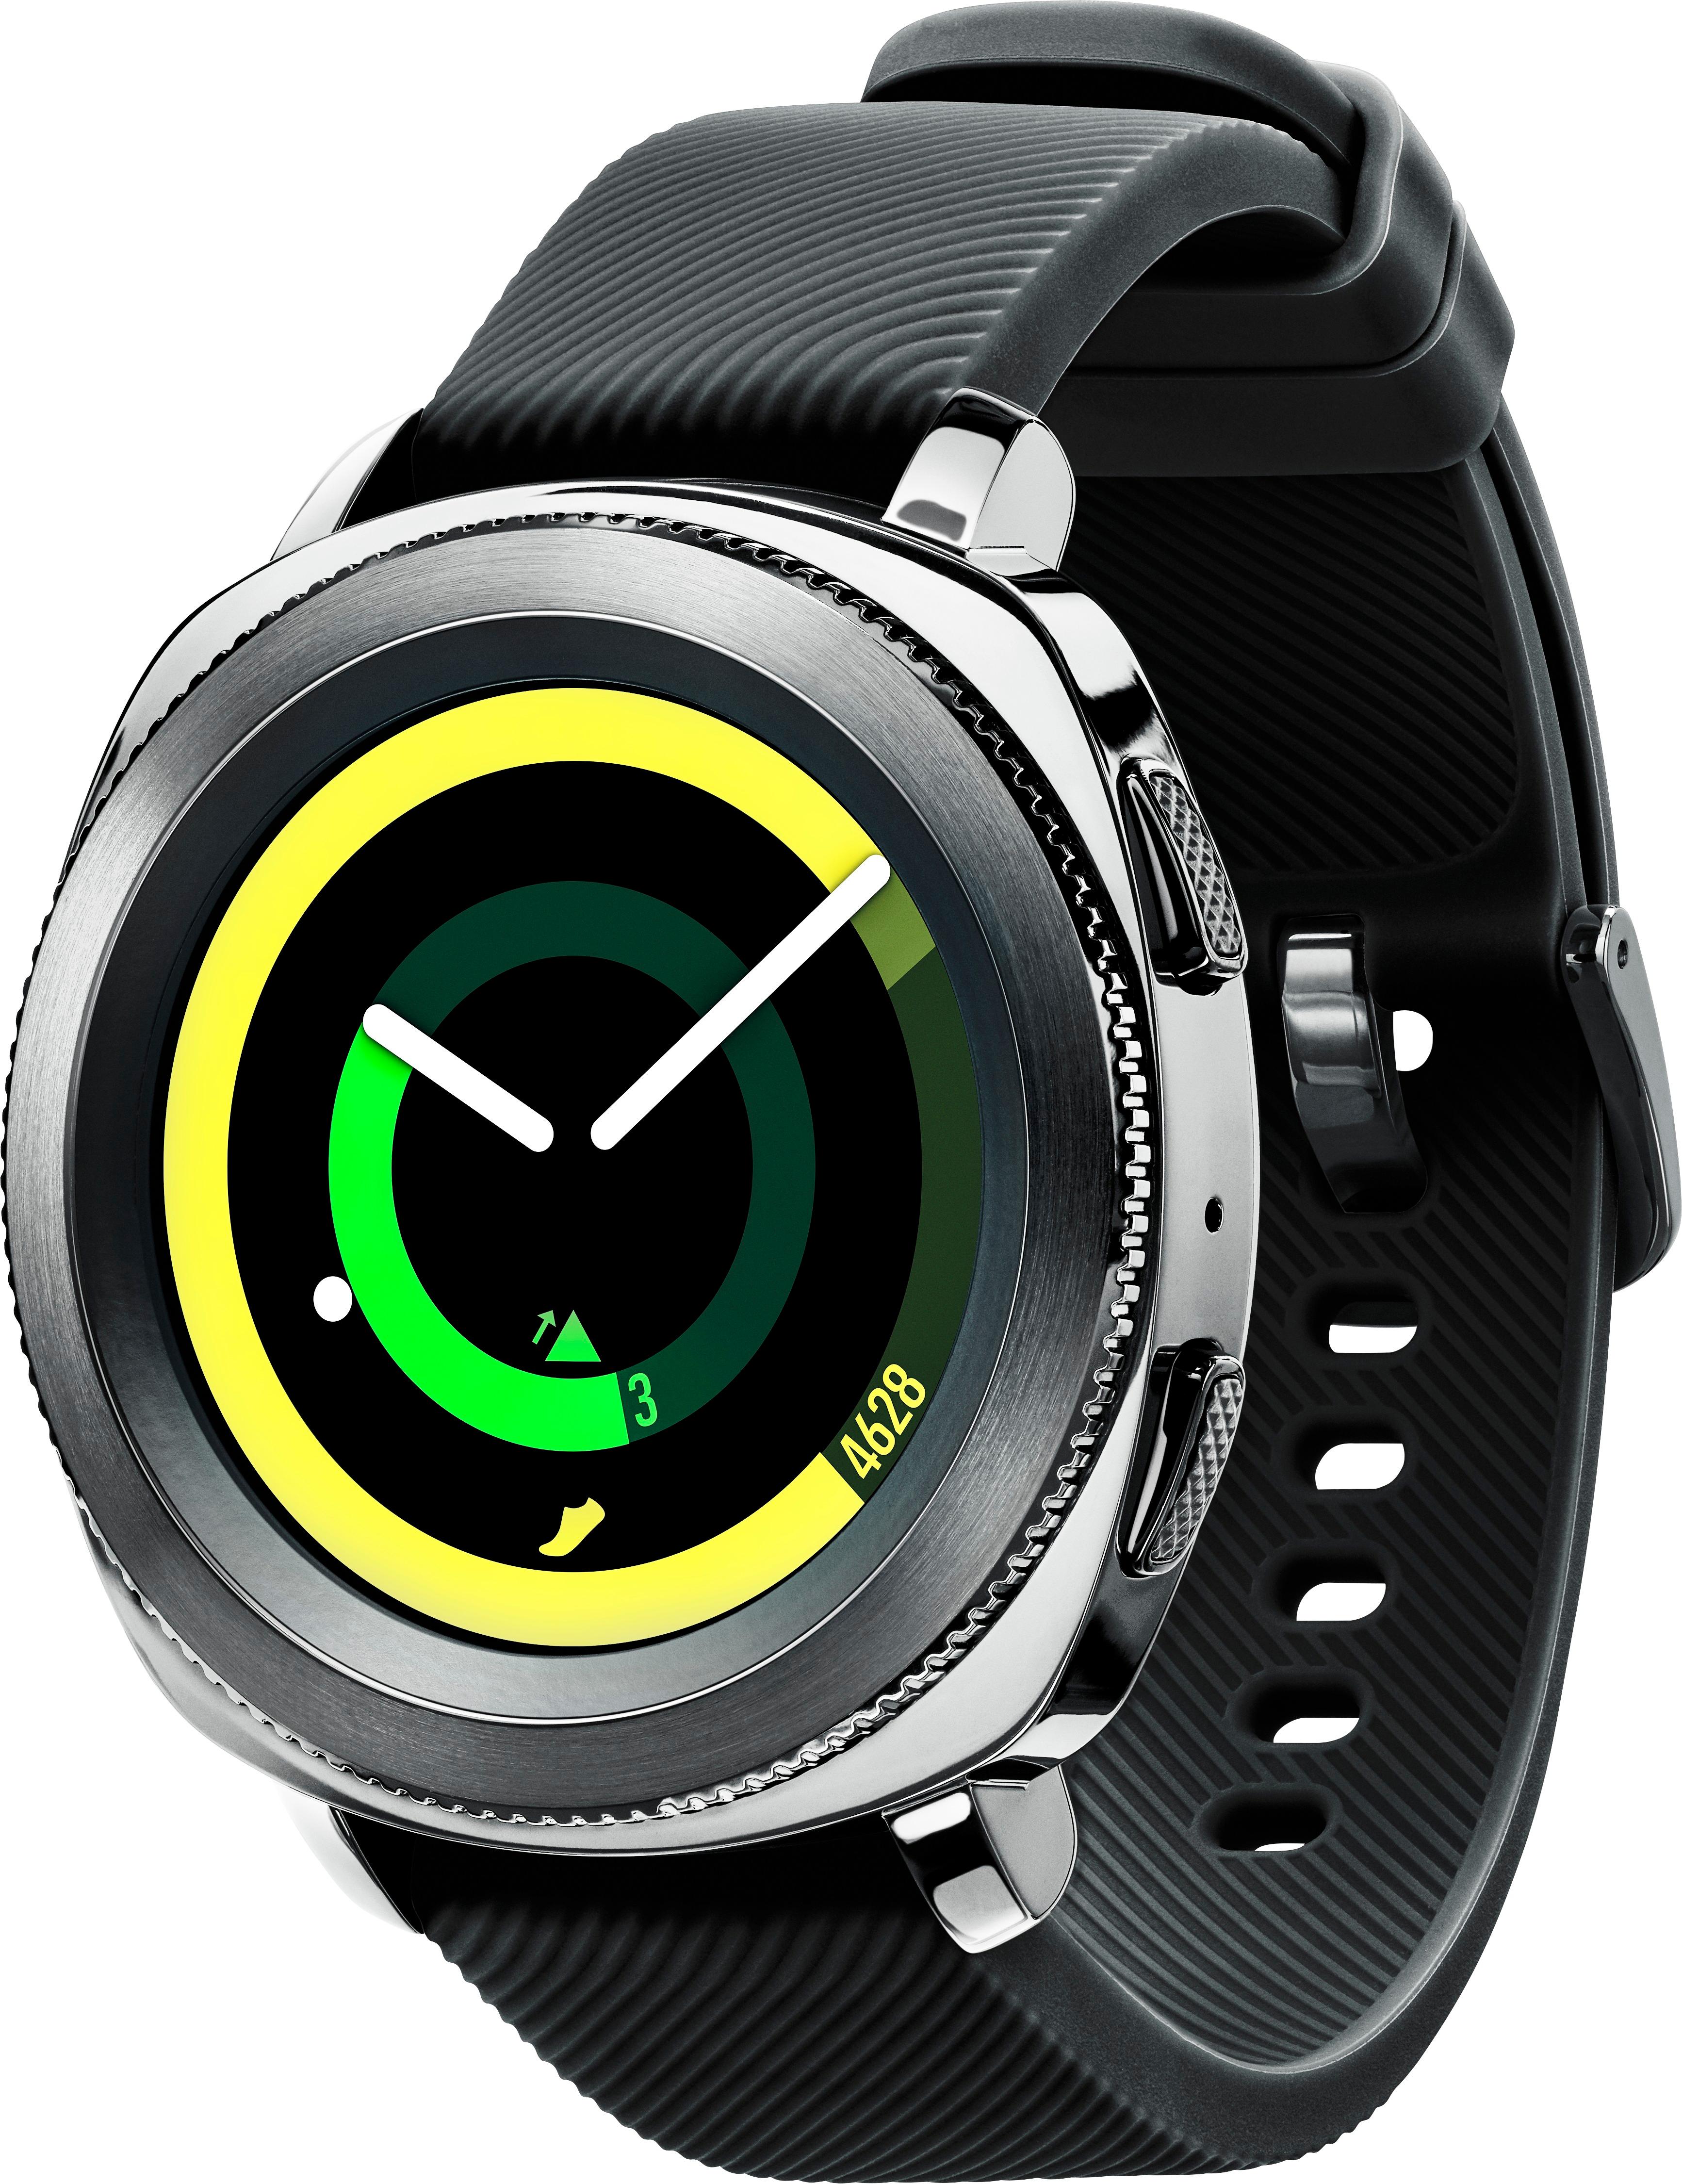 Best Samsung Gear Smartwatch 43mm Black SM-R600NZKAXAR